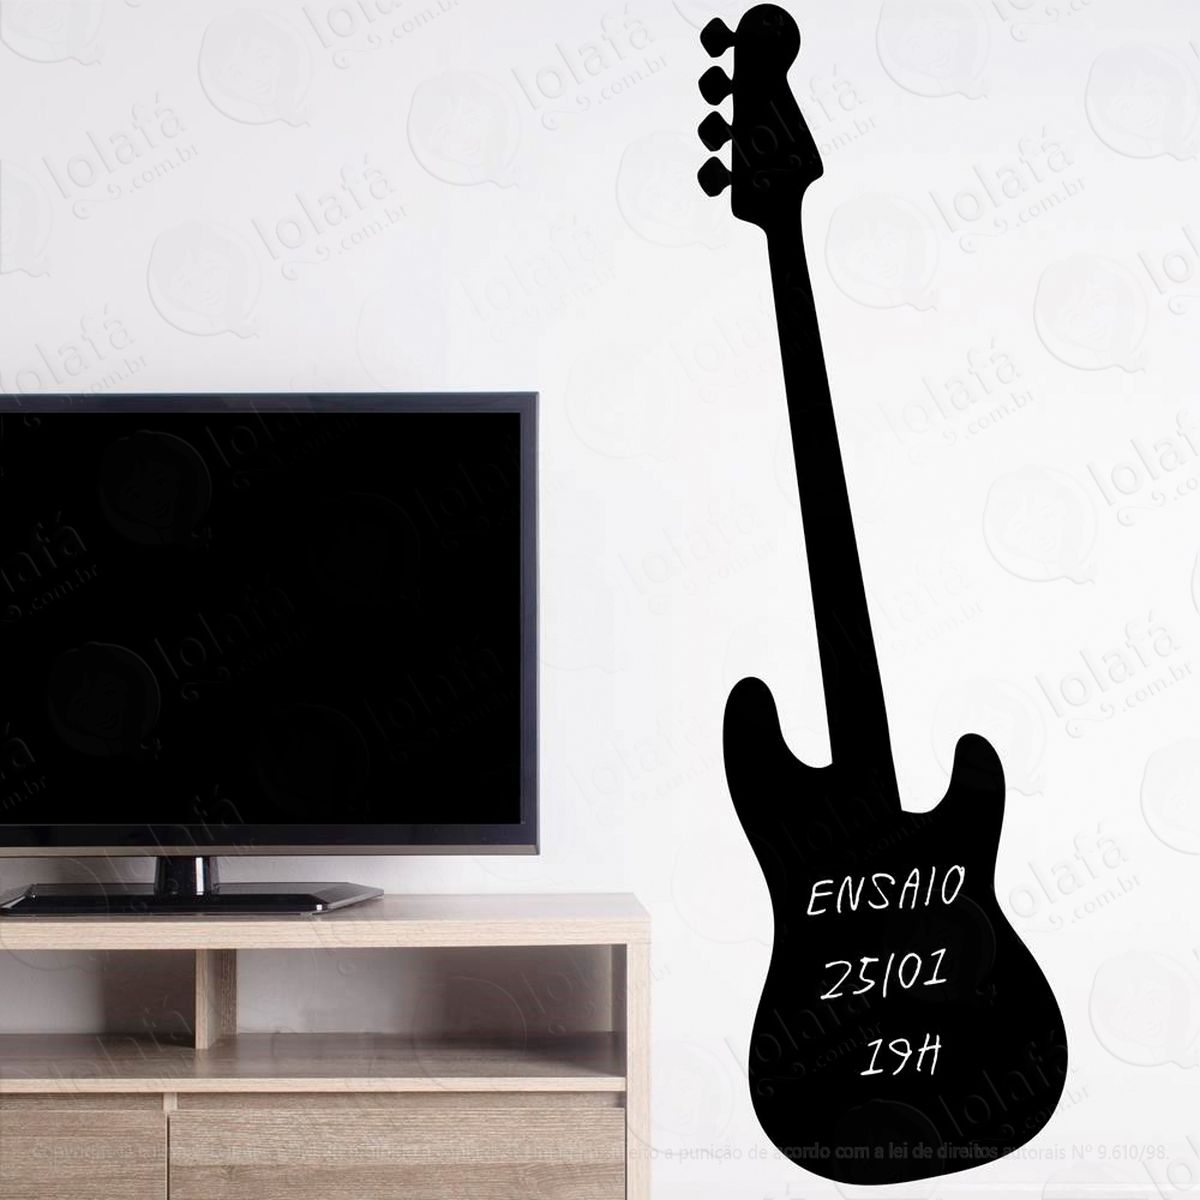 guitarra adesivo lousa quadro negro de parede para escrever com giz - mod:283